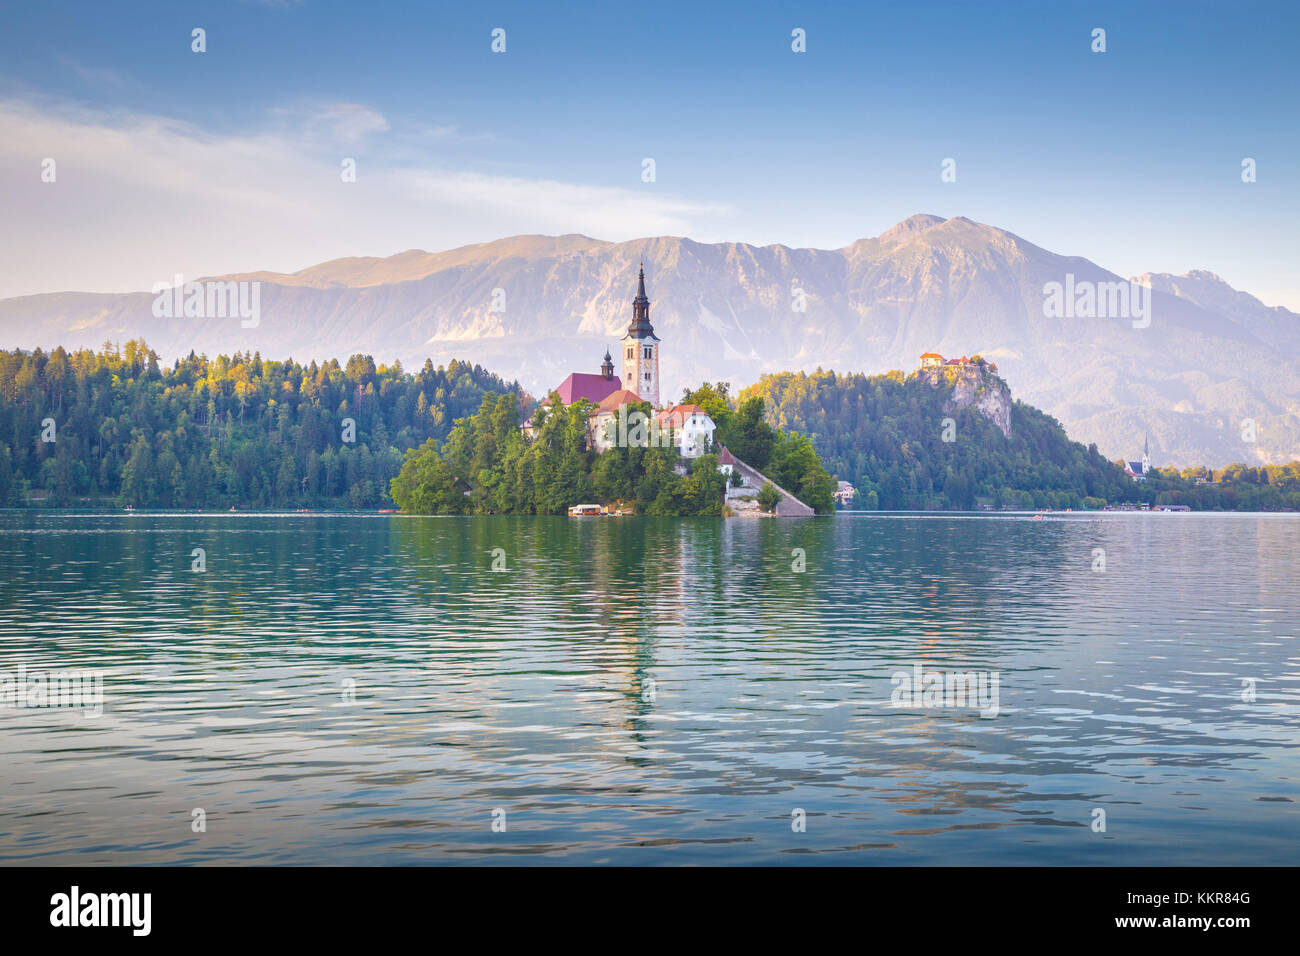 Bleder Insel und See von Bled entfernt. Bled, Obere Krainer region, Slowenien. Stockfoto